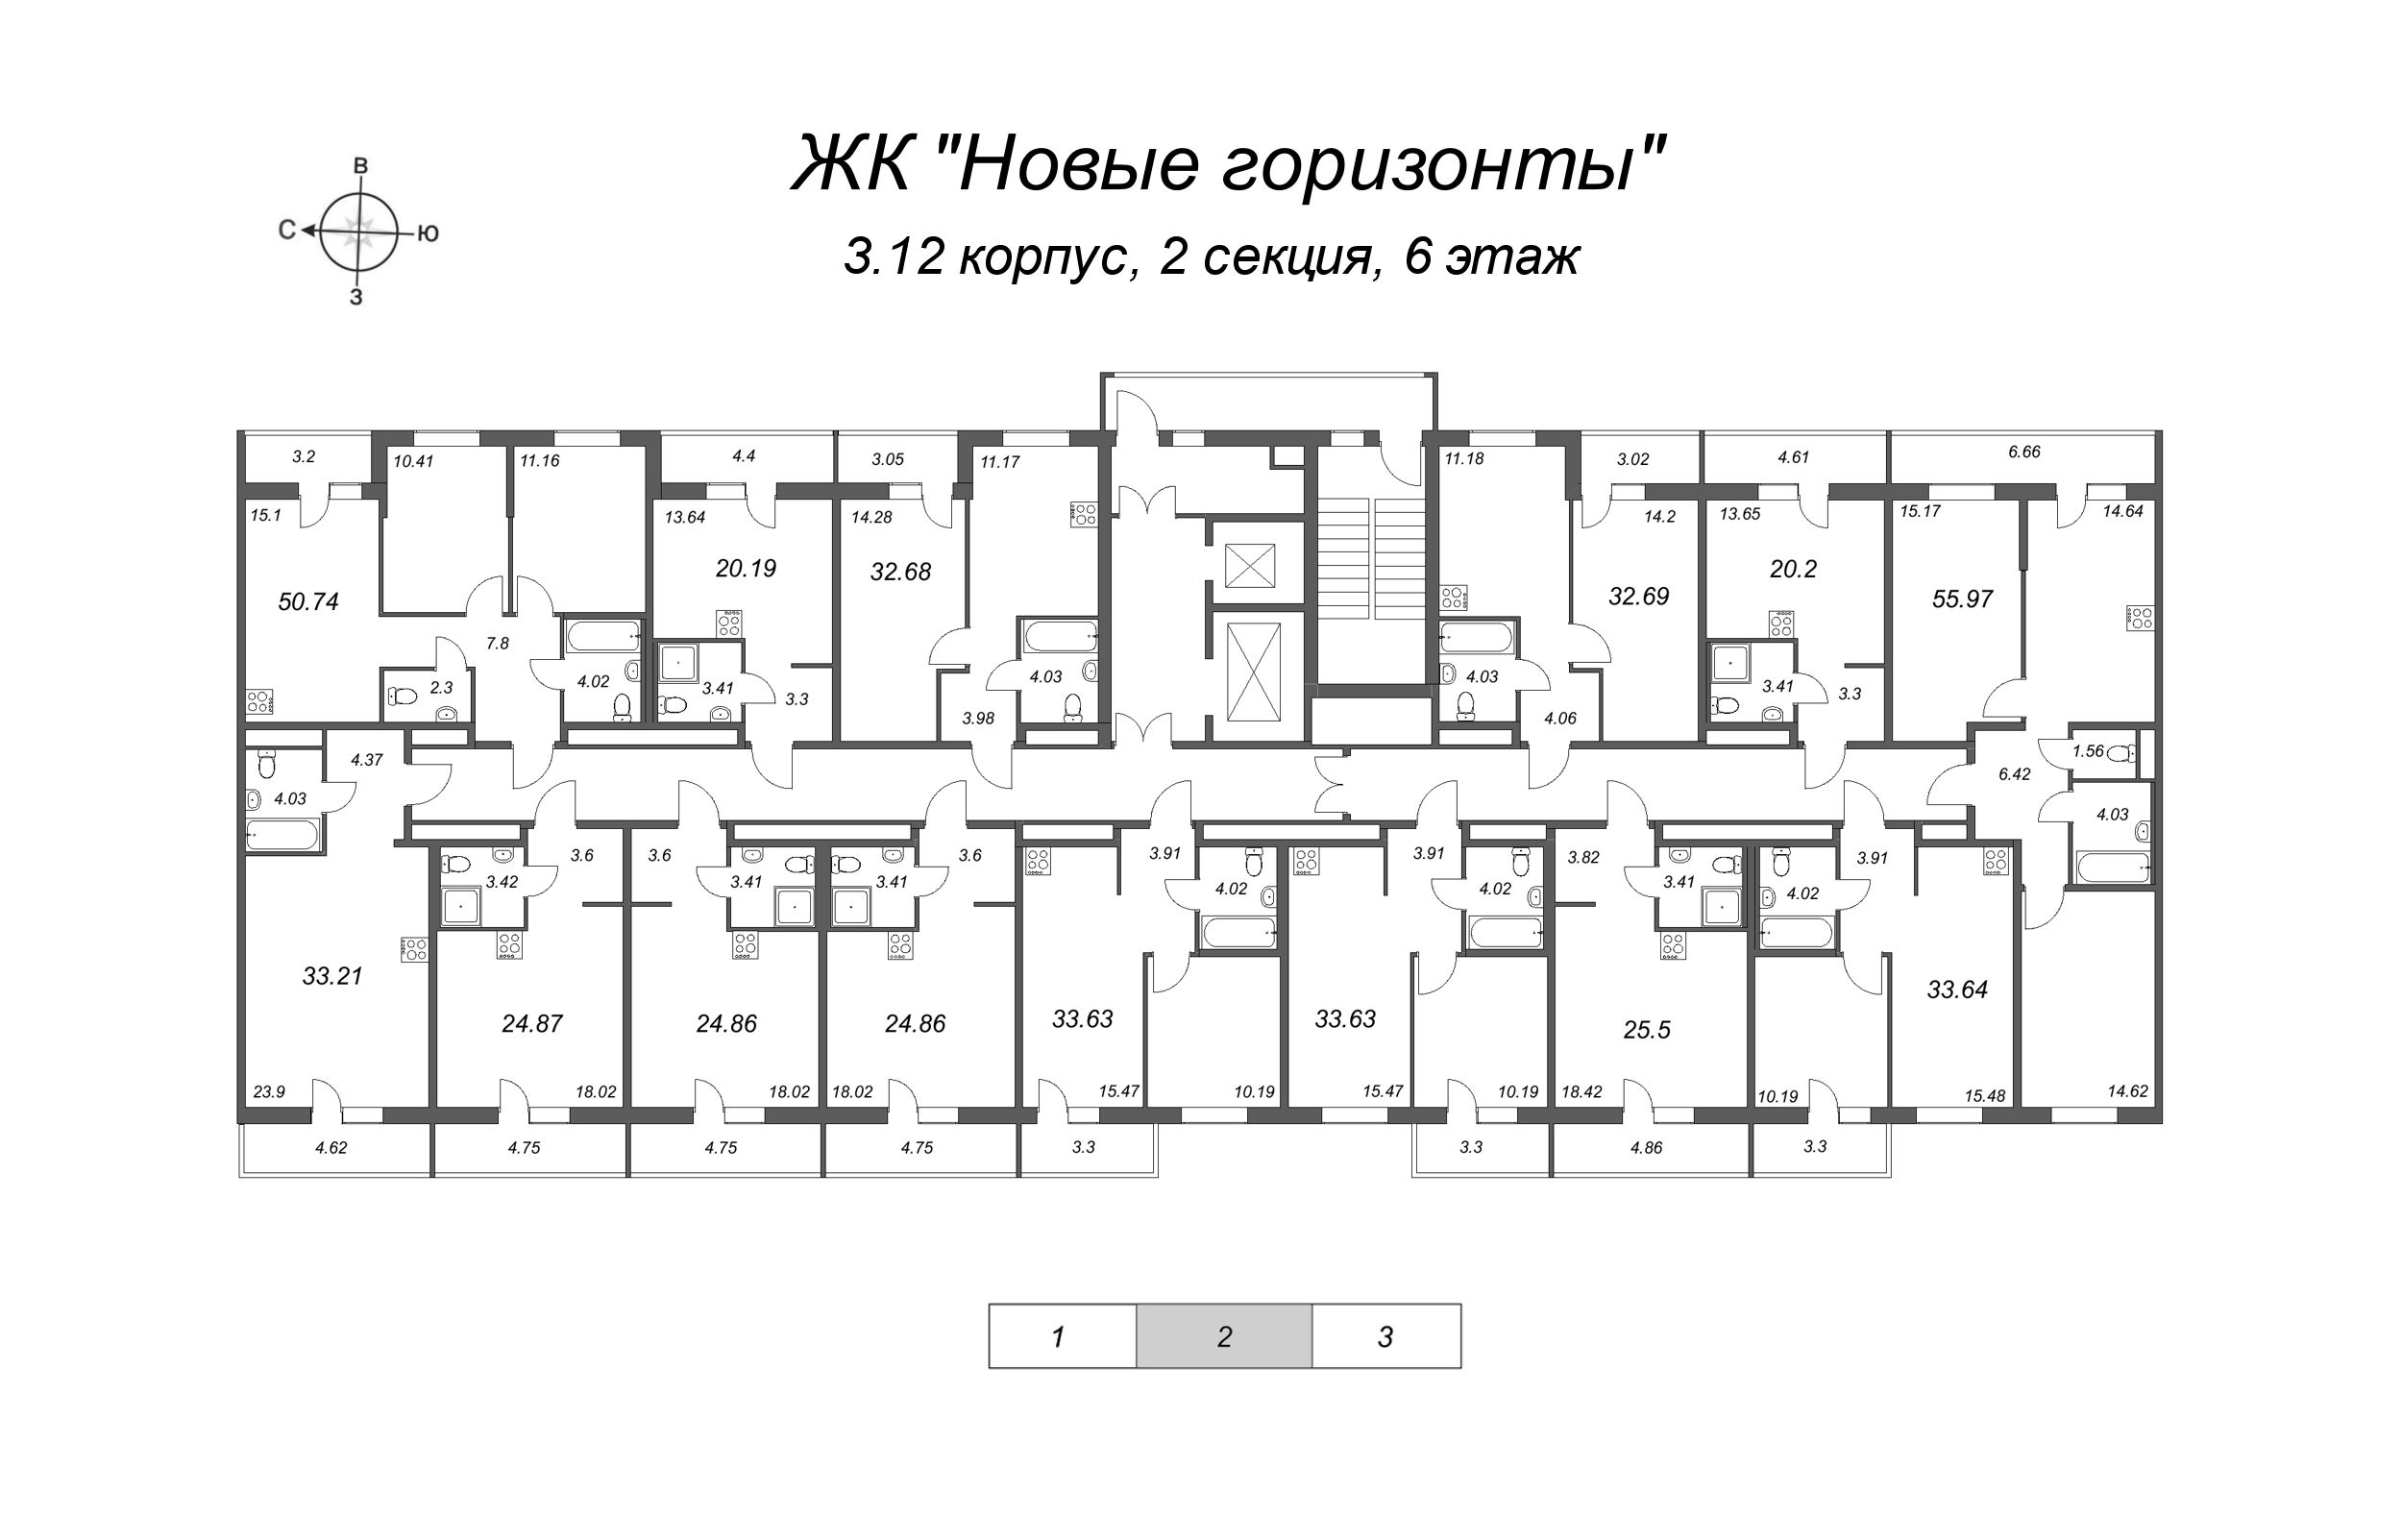 3-комнатная (Евро) квартира, 50.74 м² в ЖК "Новые горизонты" - планировка этажа